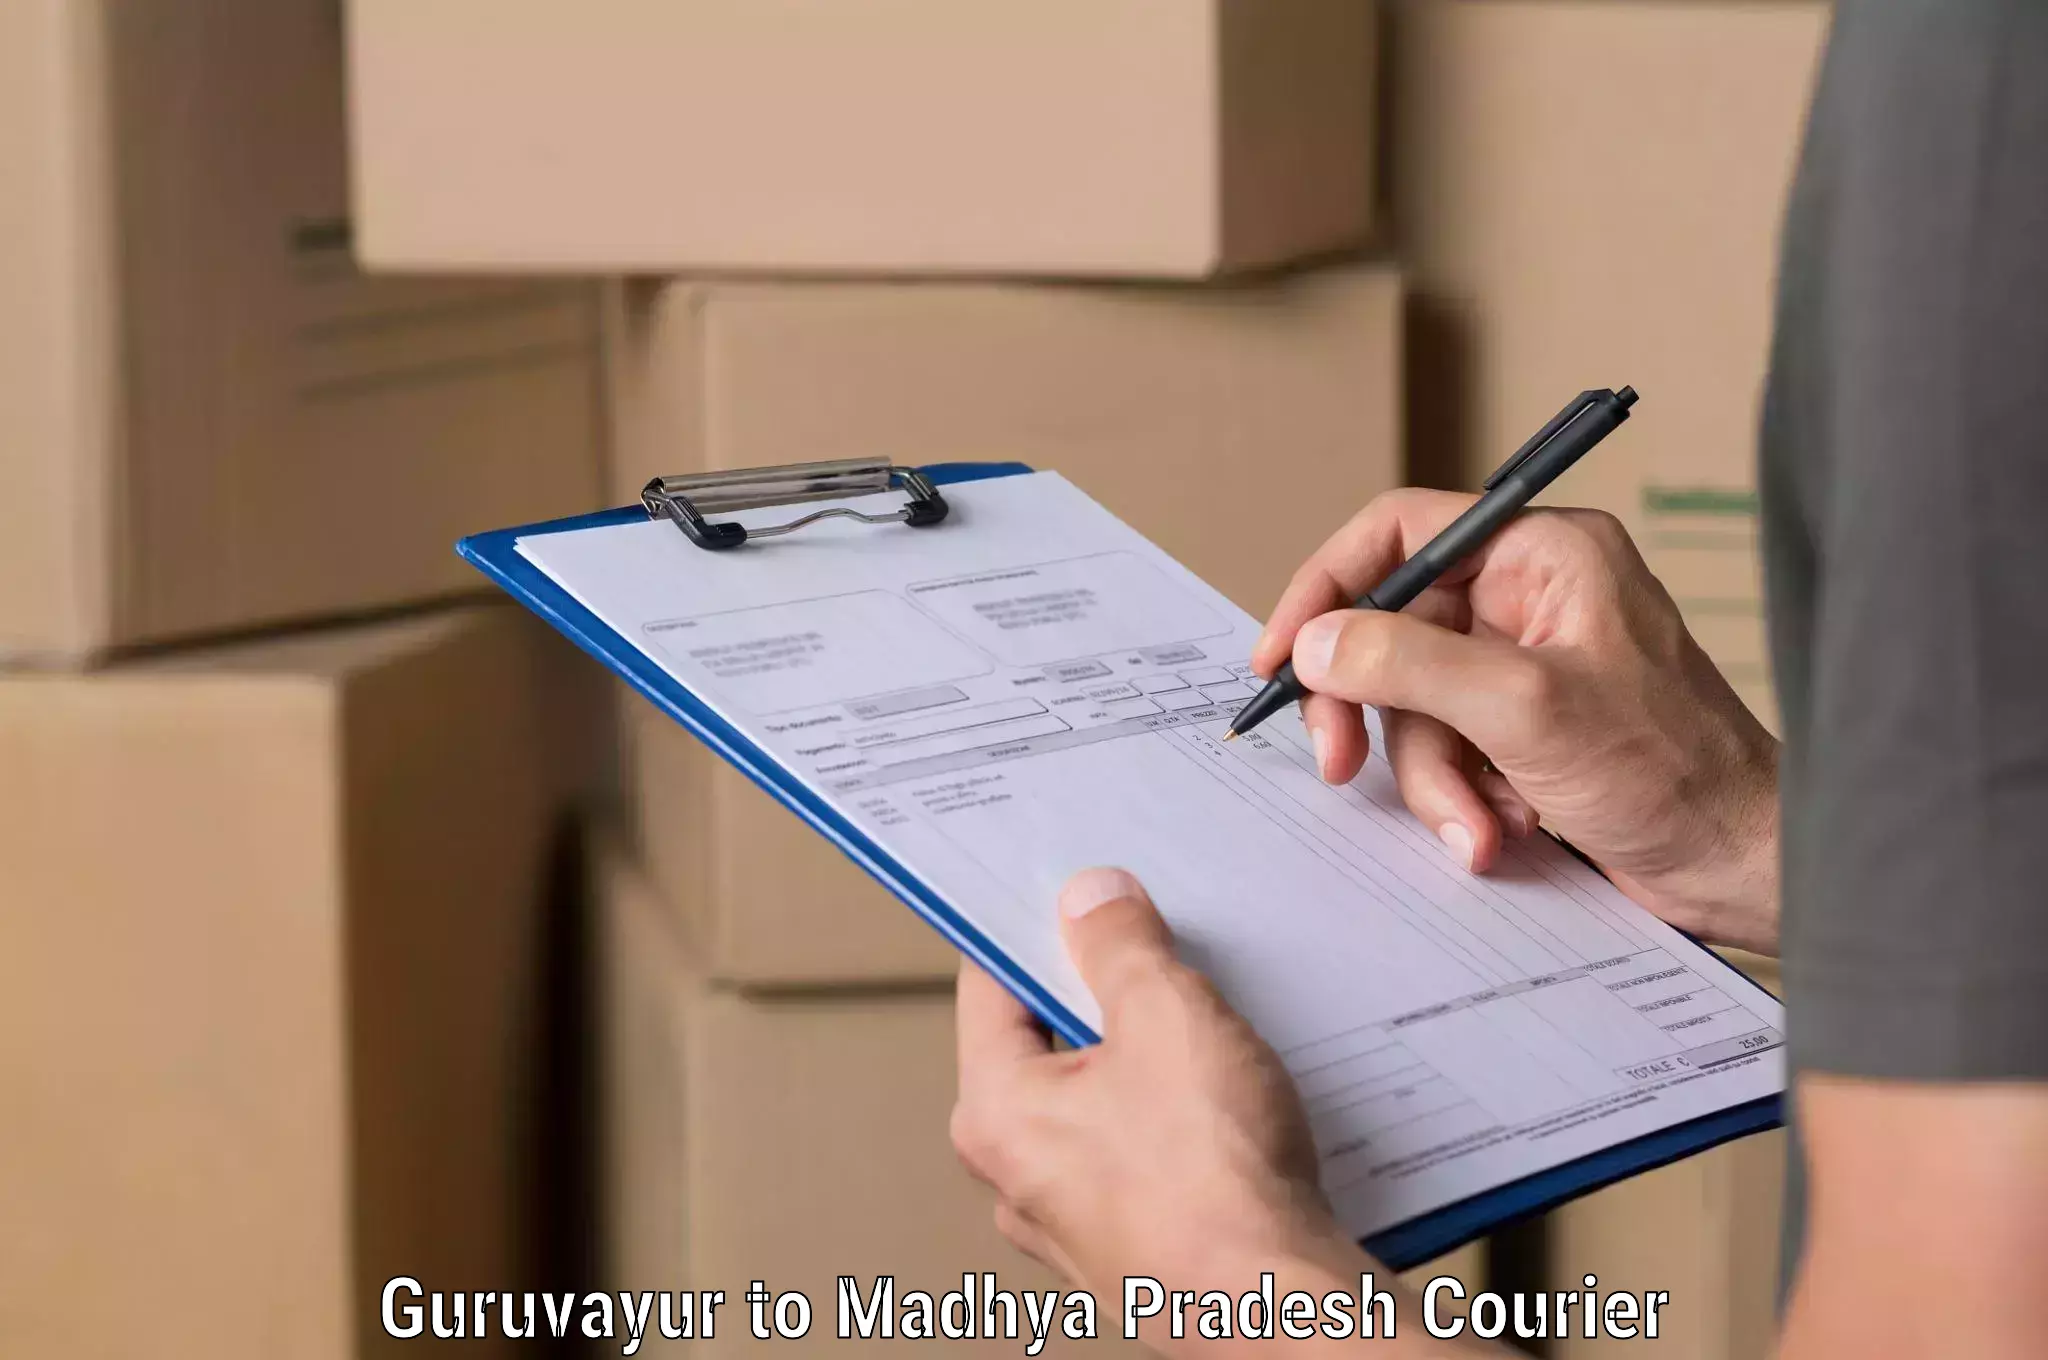 Efficient parcel service Guruvayur to Dewas